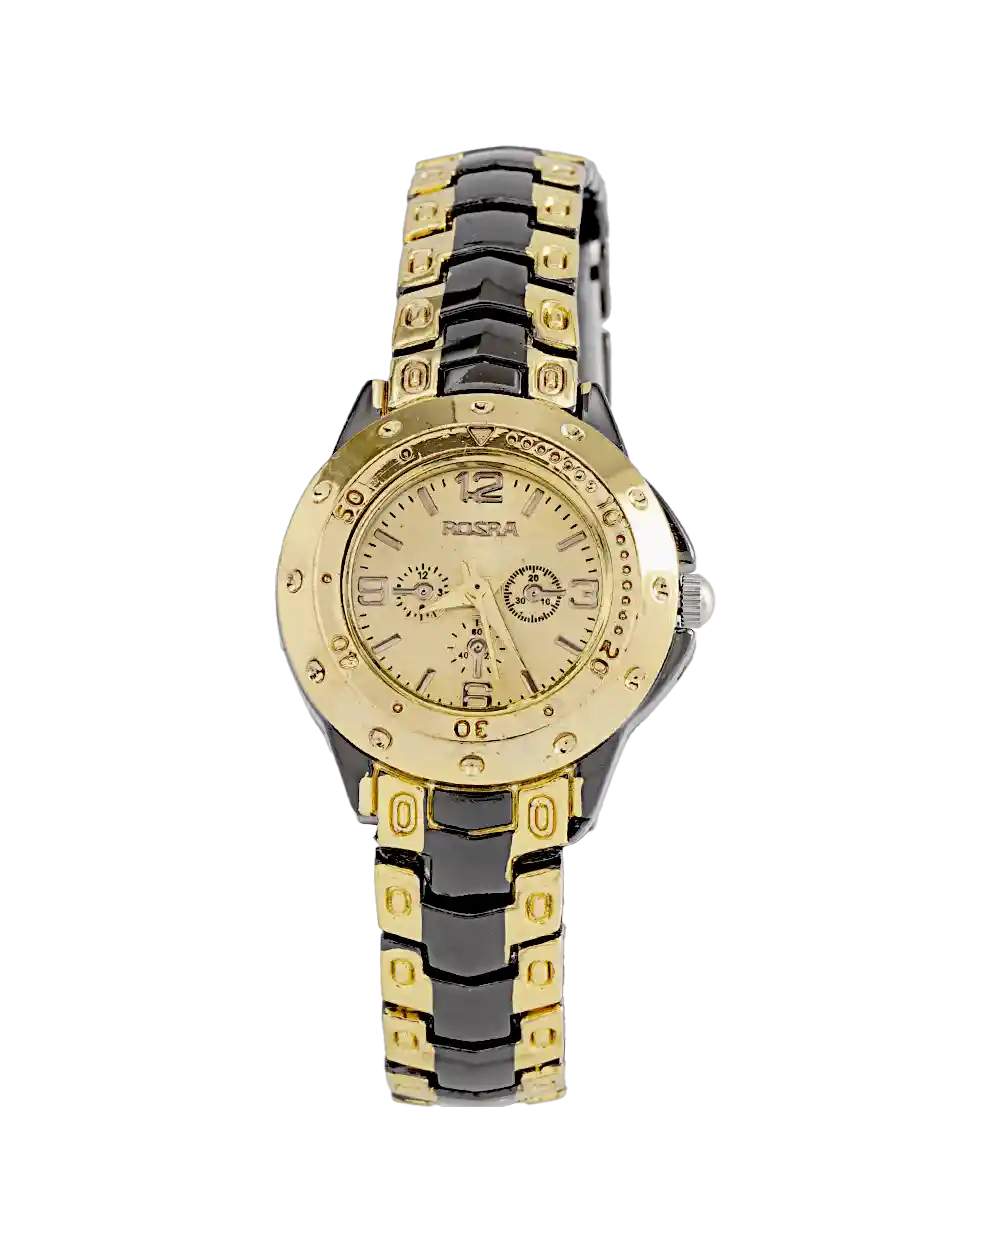 خرید ساعت مچی زنانه روسرا ROSRA مدل 1974 بند استیل مشکی طلایی رنگ ثابت و صفحه طلایی با بهترین قیمت و ارسال رایگان به سراسر ایران درب منزل